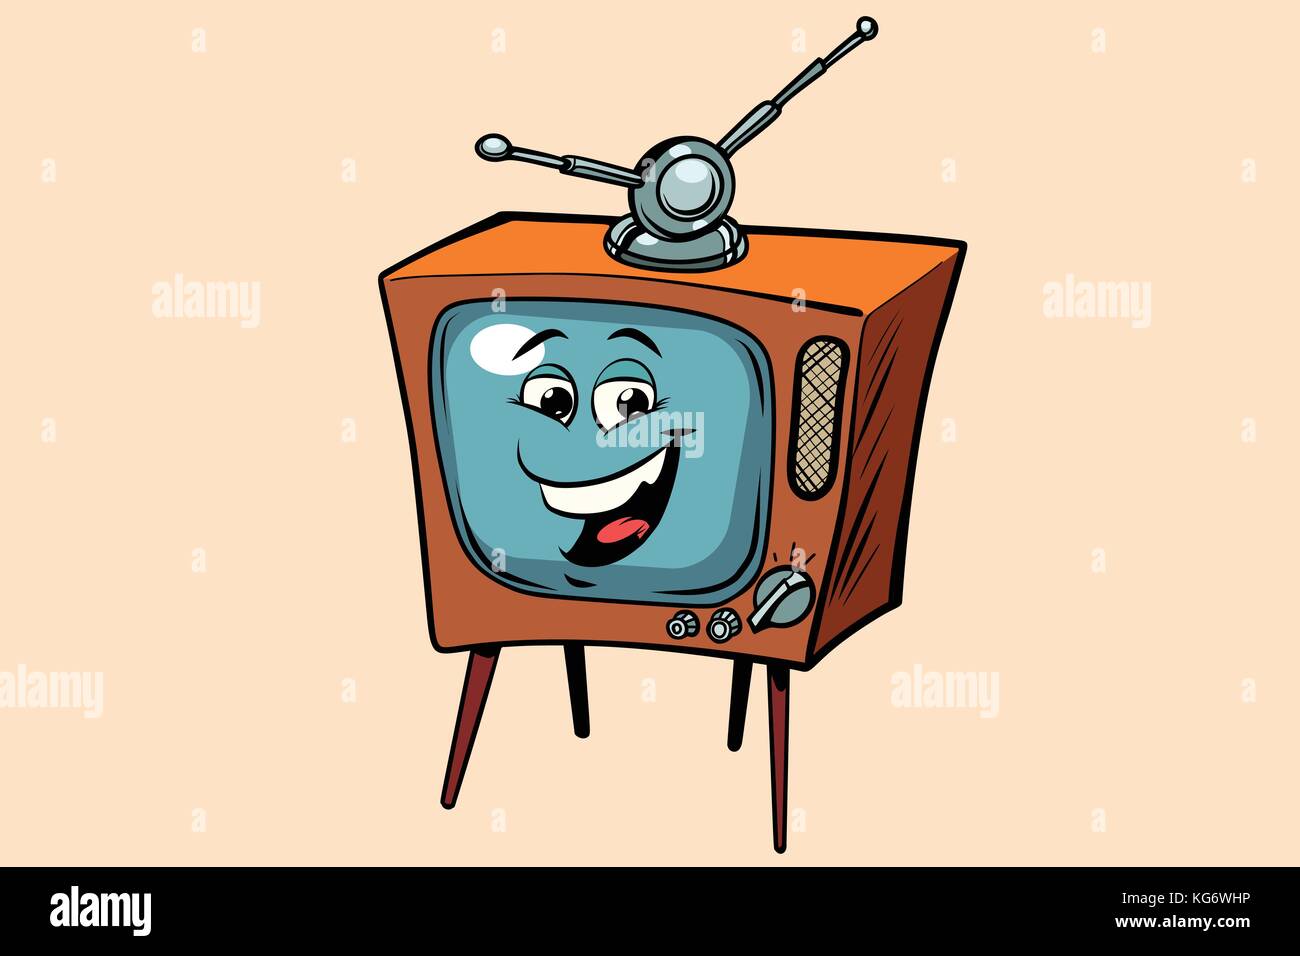 Kawaii tv cartoon hi-res stock photography and images - Alamy